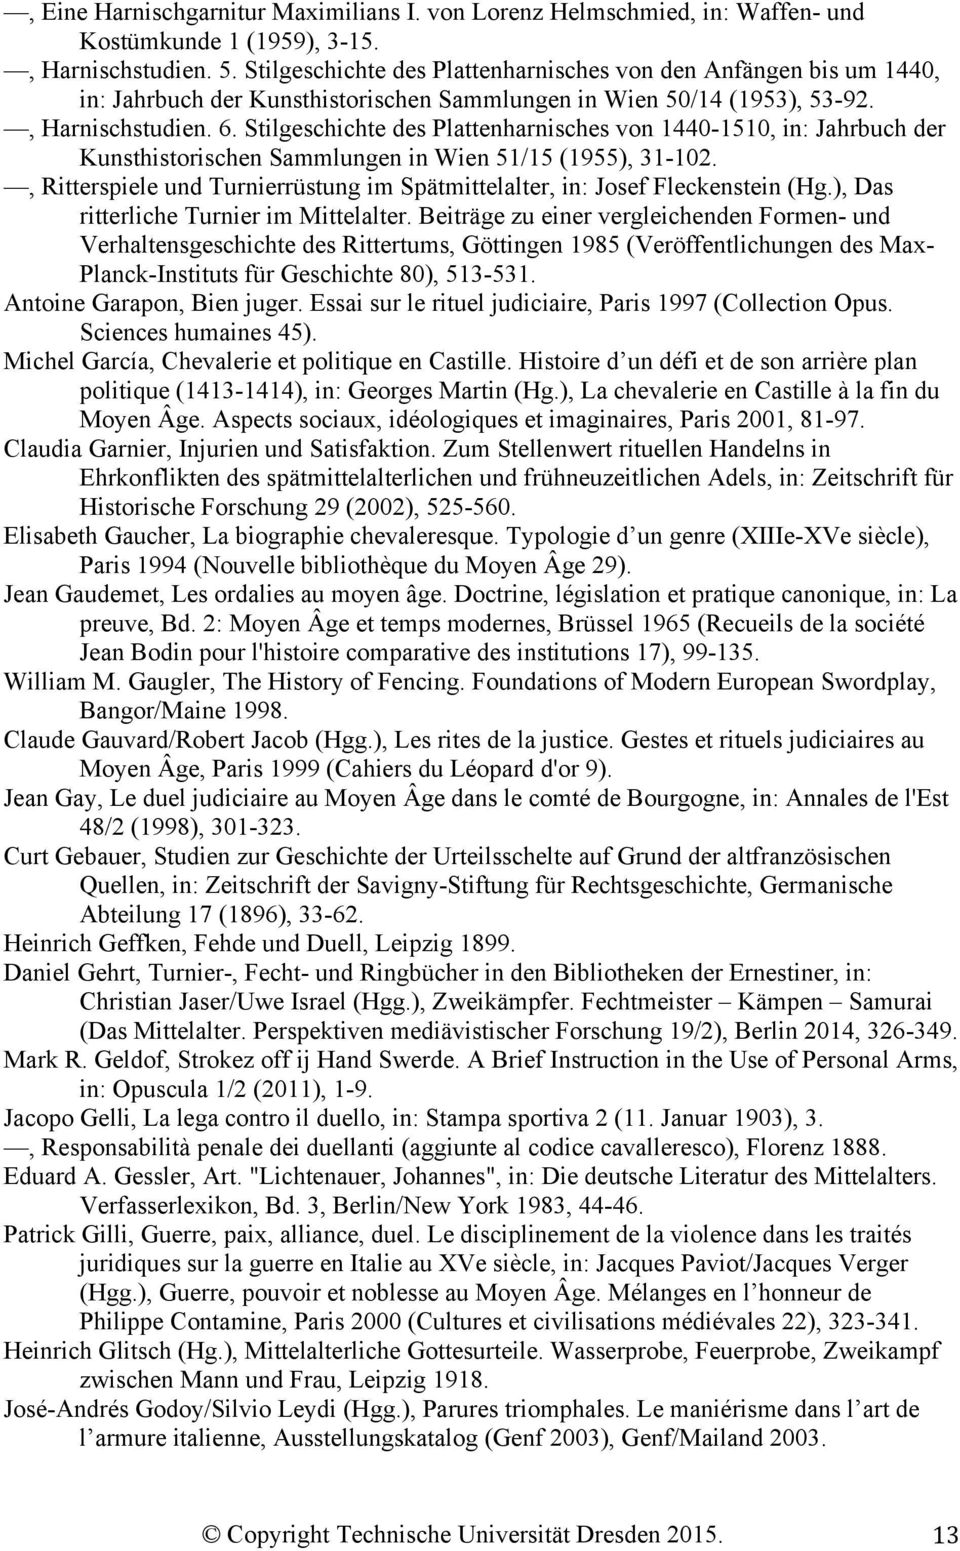 Stilgeschichte des Plattenharnisches von 1440-1510, in: Jahrbuch der Kunsthistorischen Sammlungen in Wien 51/15 (1955), 31-102.